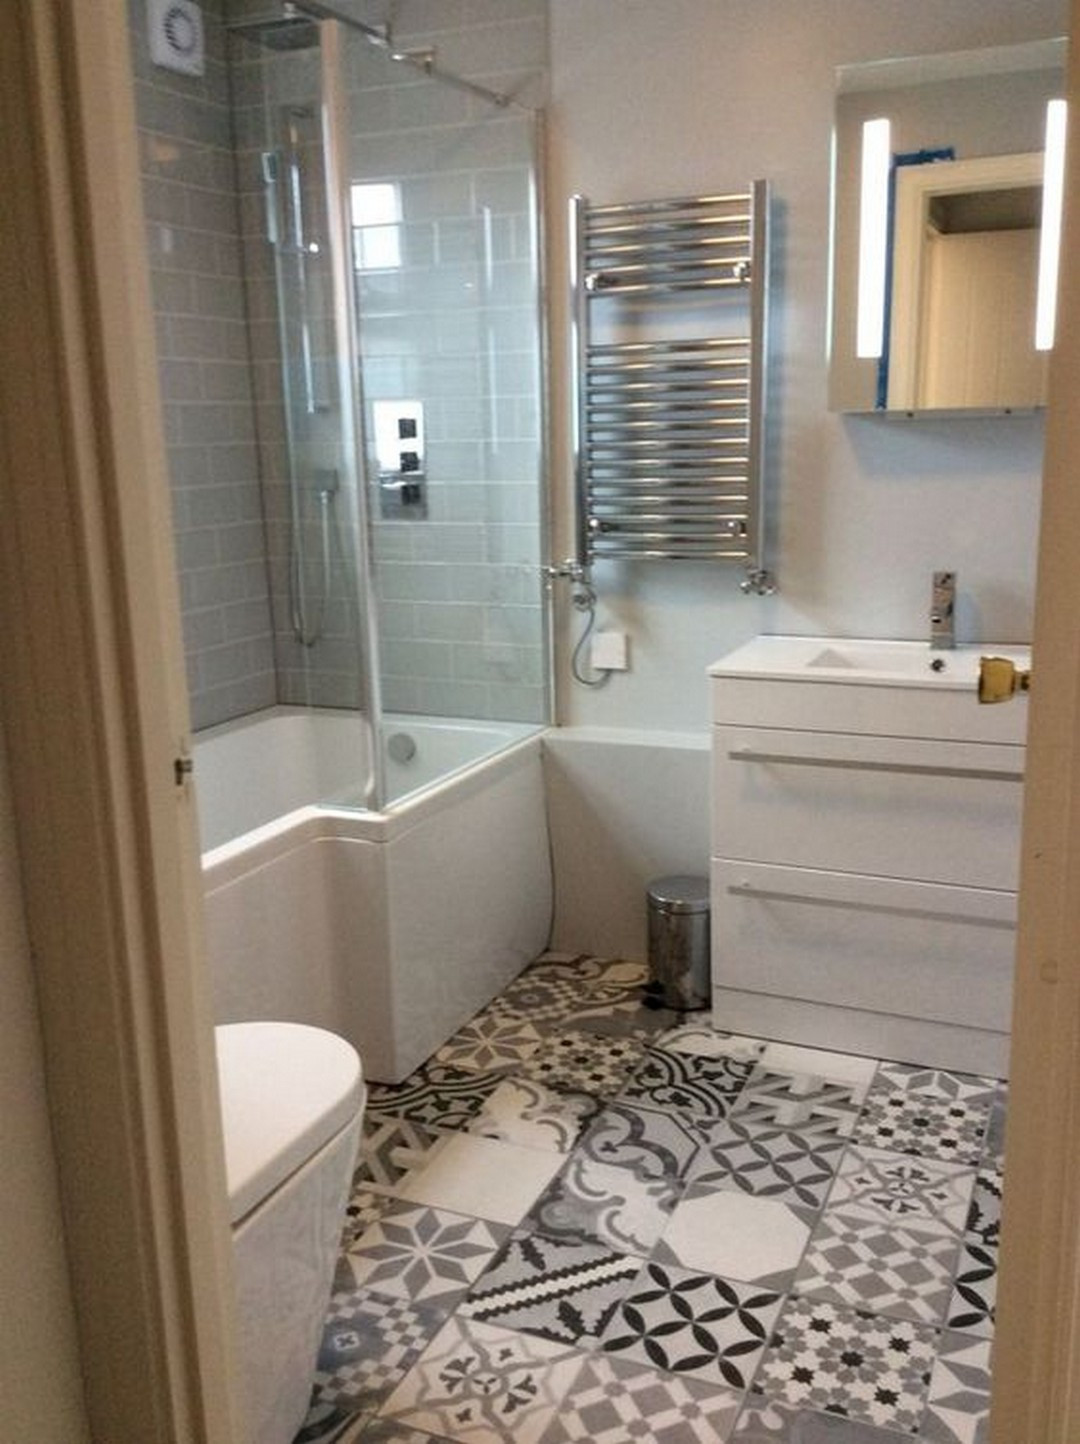 Bathroom Floor Tiles Ideas
 Style up your Ordinary Bathroom with These Spanish Tile